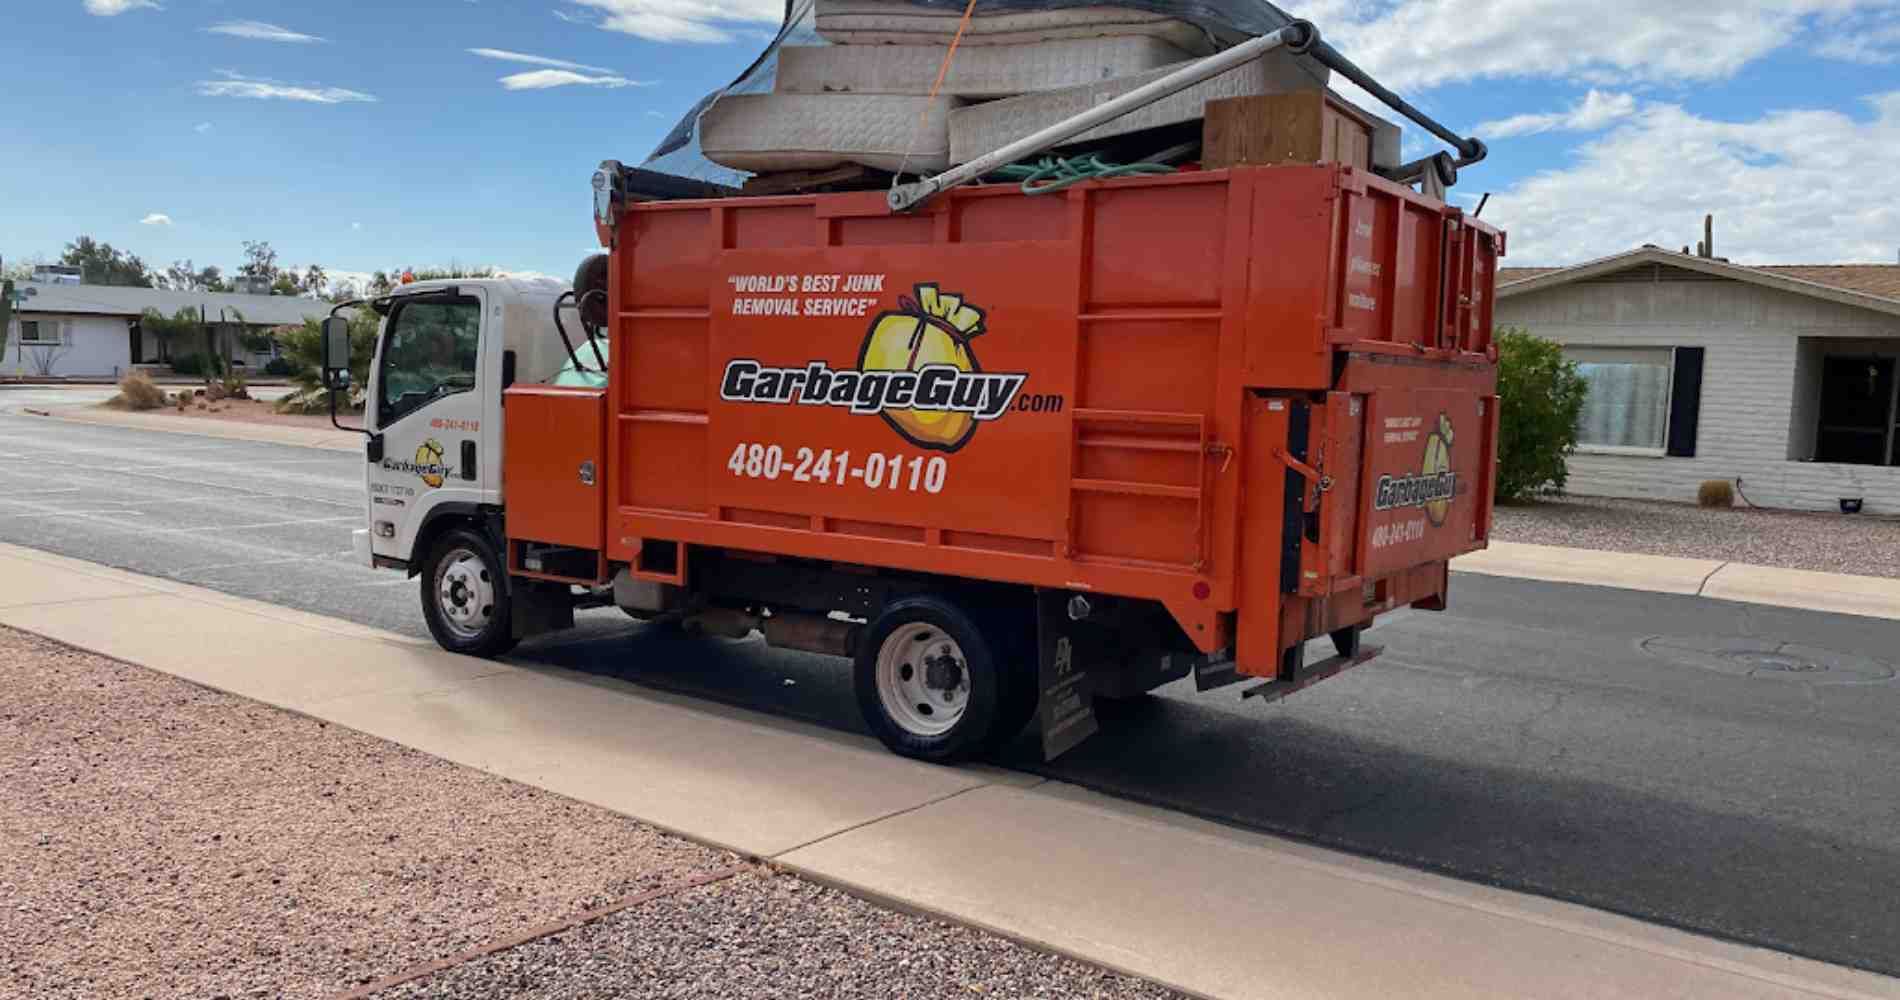 Curbside Trash Pickup in Glendale, AZ